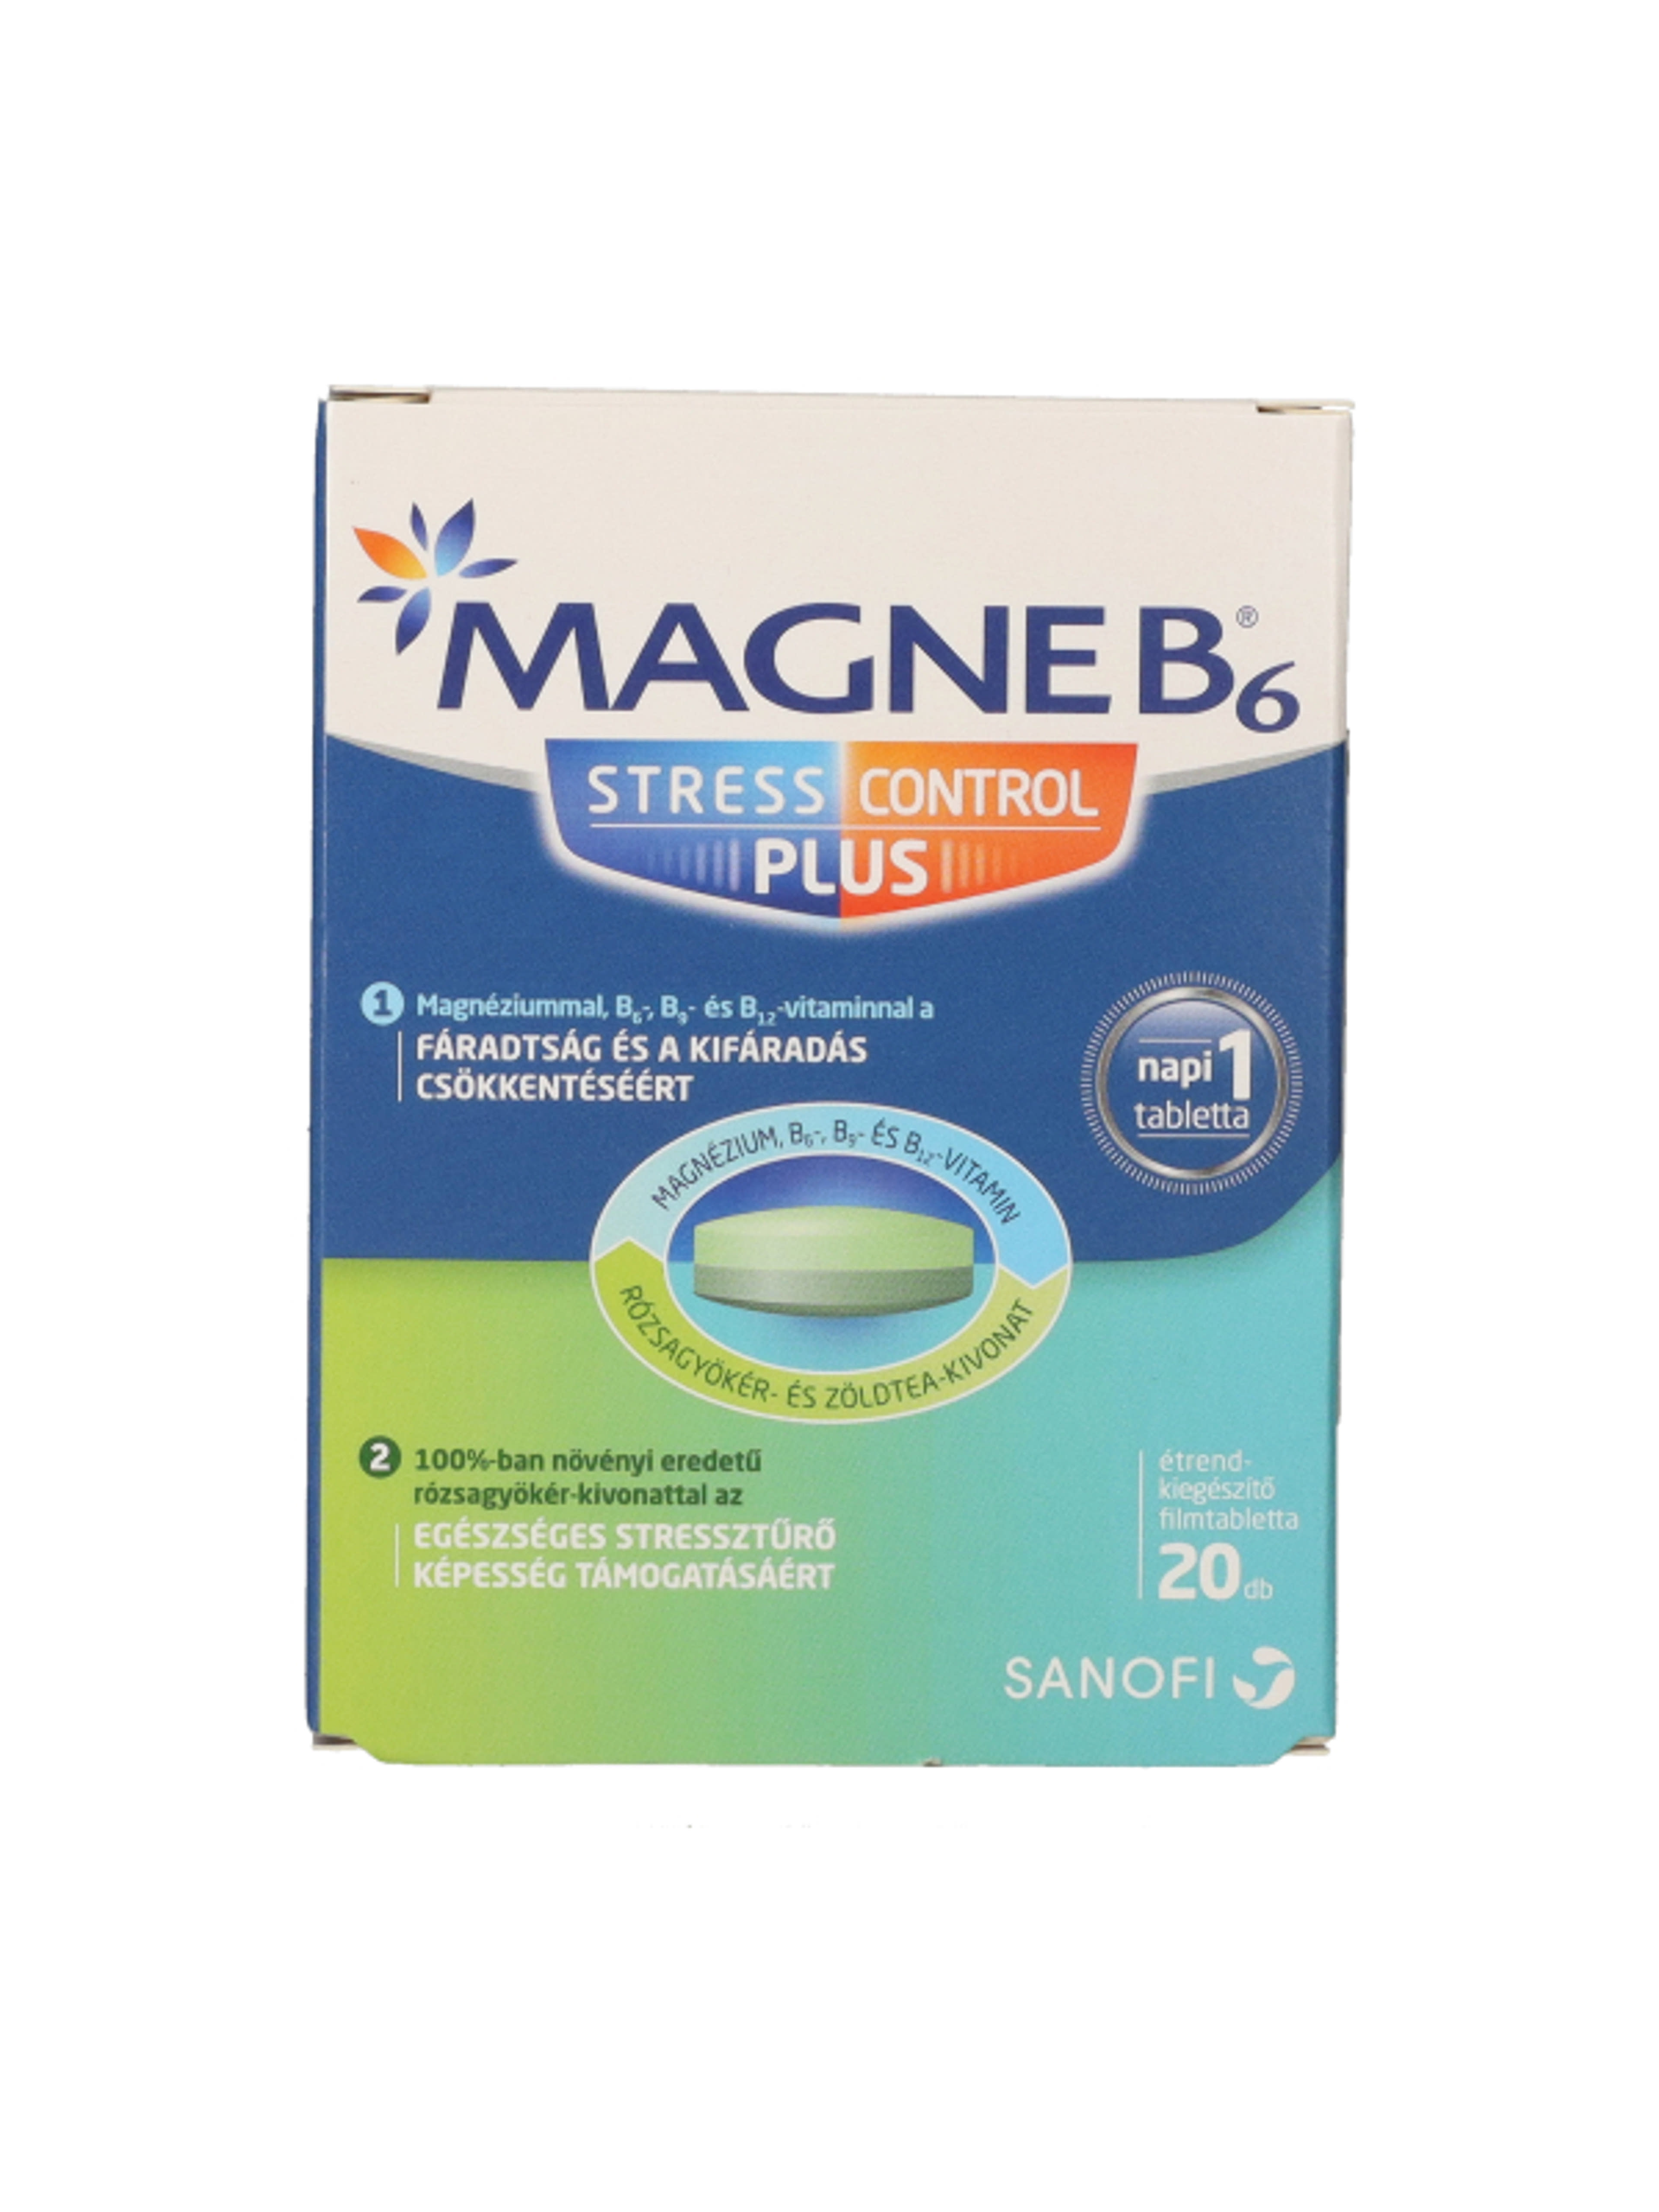 Sanofi Magne B6 Stress Control plusz tabletta - 20 db